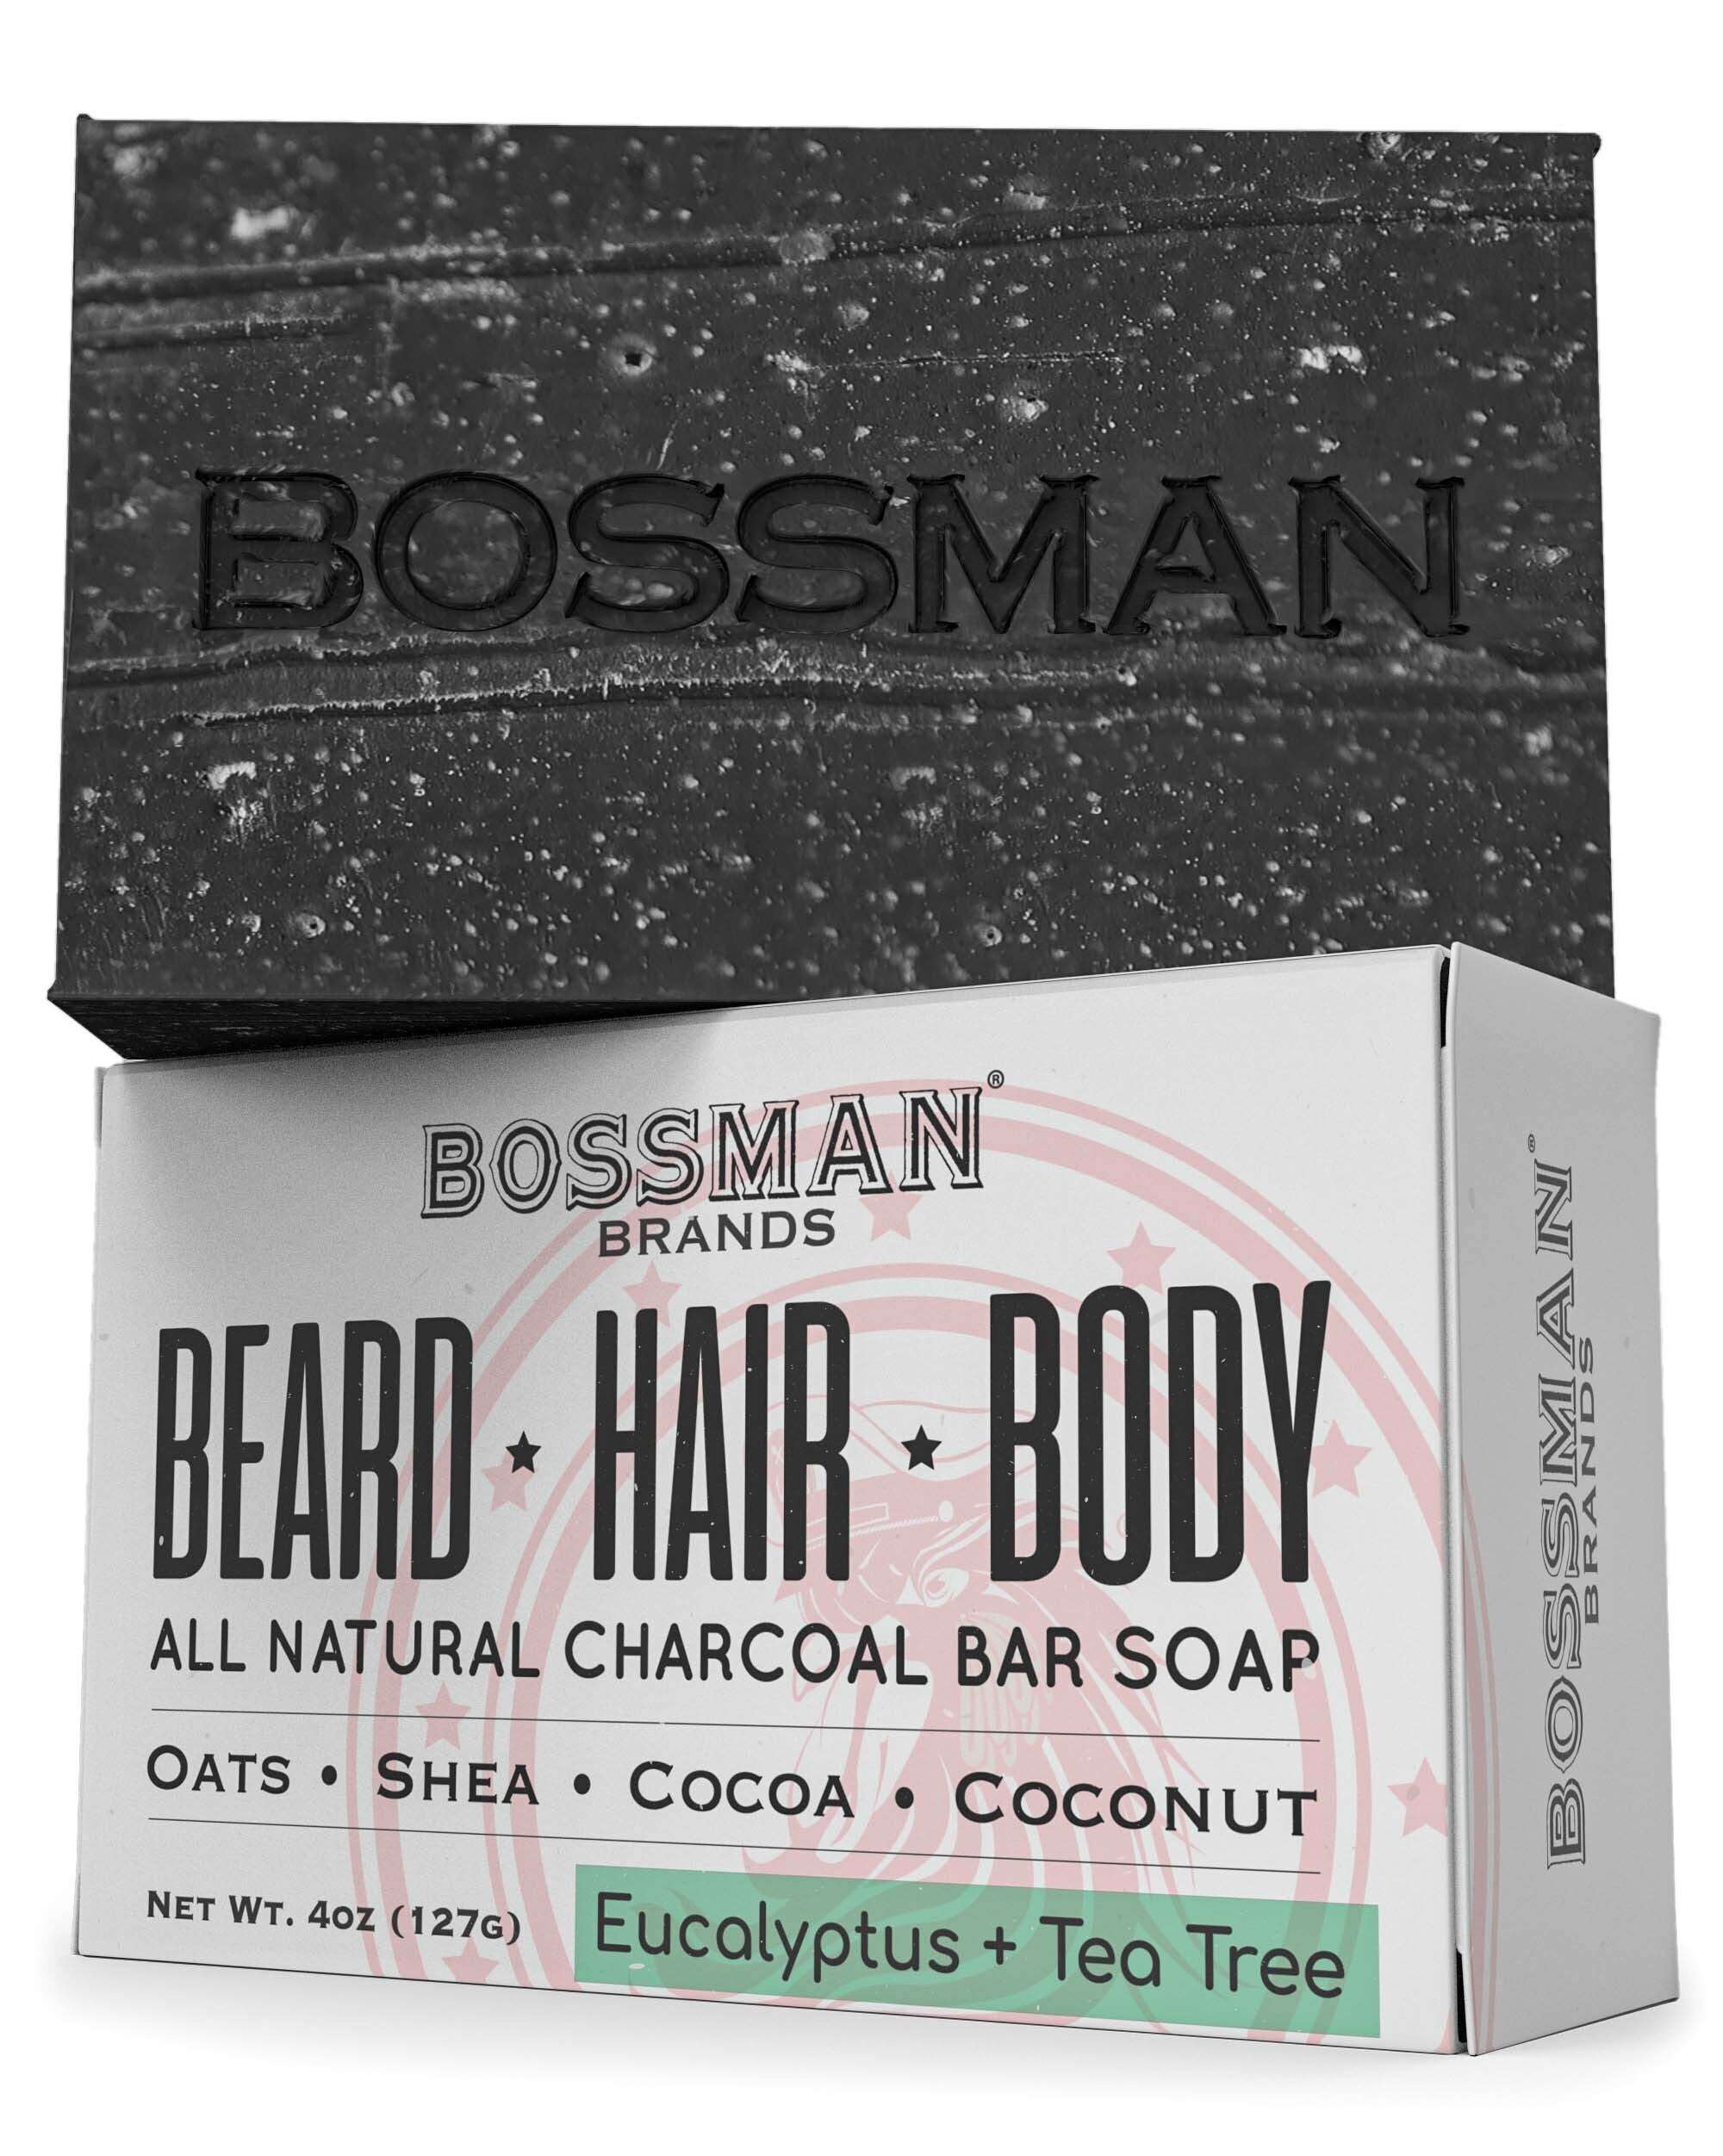 http://bossmanbrand.com/cdn/shop/files/All-Natural-Exfoliating-Beard-Hair-Body-Bar-Soap-Bossman-Brands-449.jpg?v=1686705073&width=2048